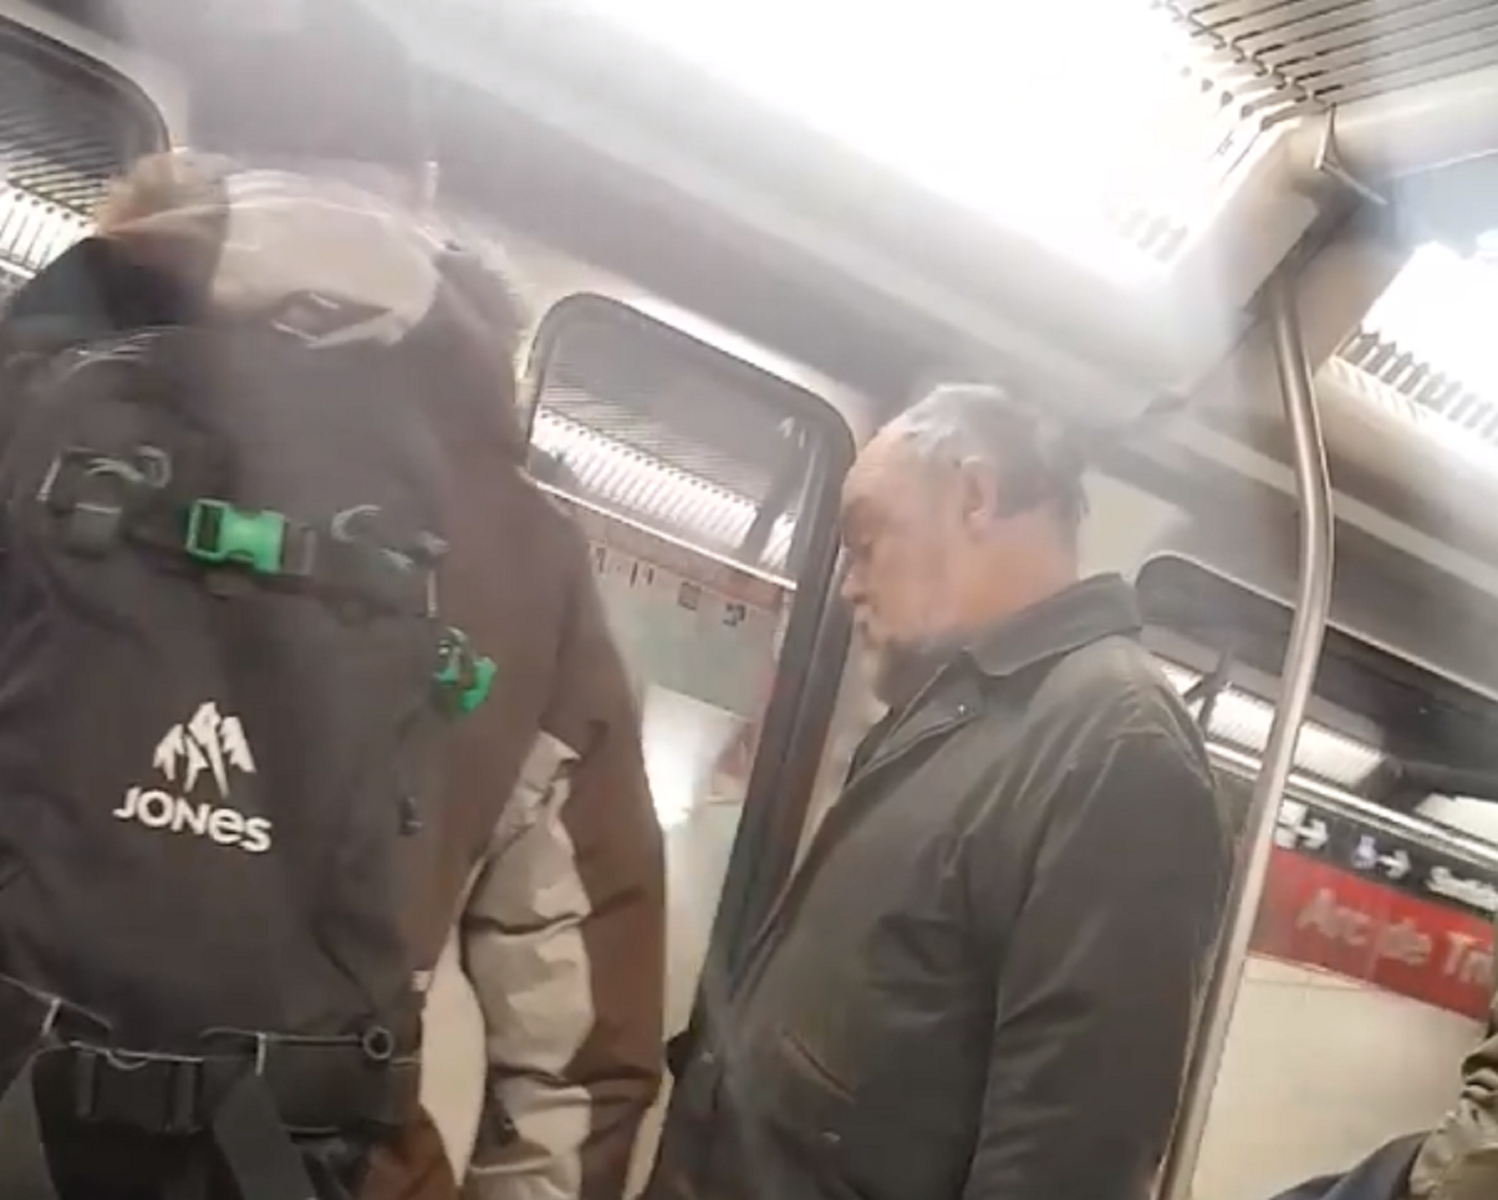 VÍDEO: Agressió racista al metro de Barcelona: "Se us ha acabat el bròquil"